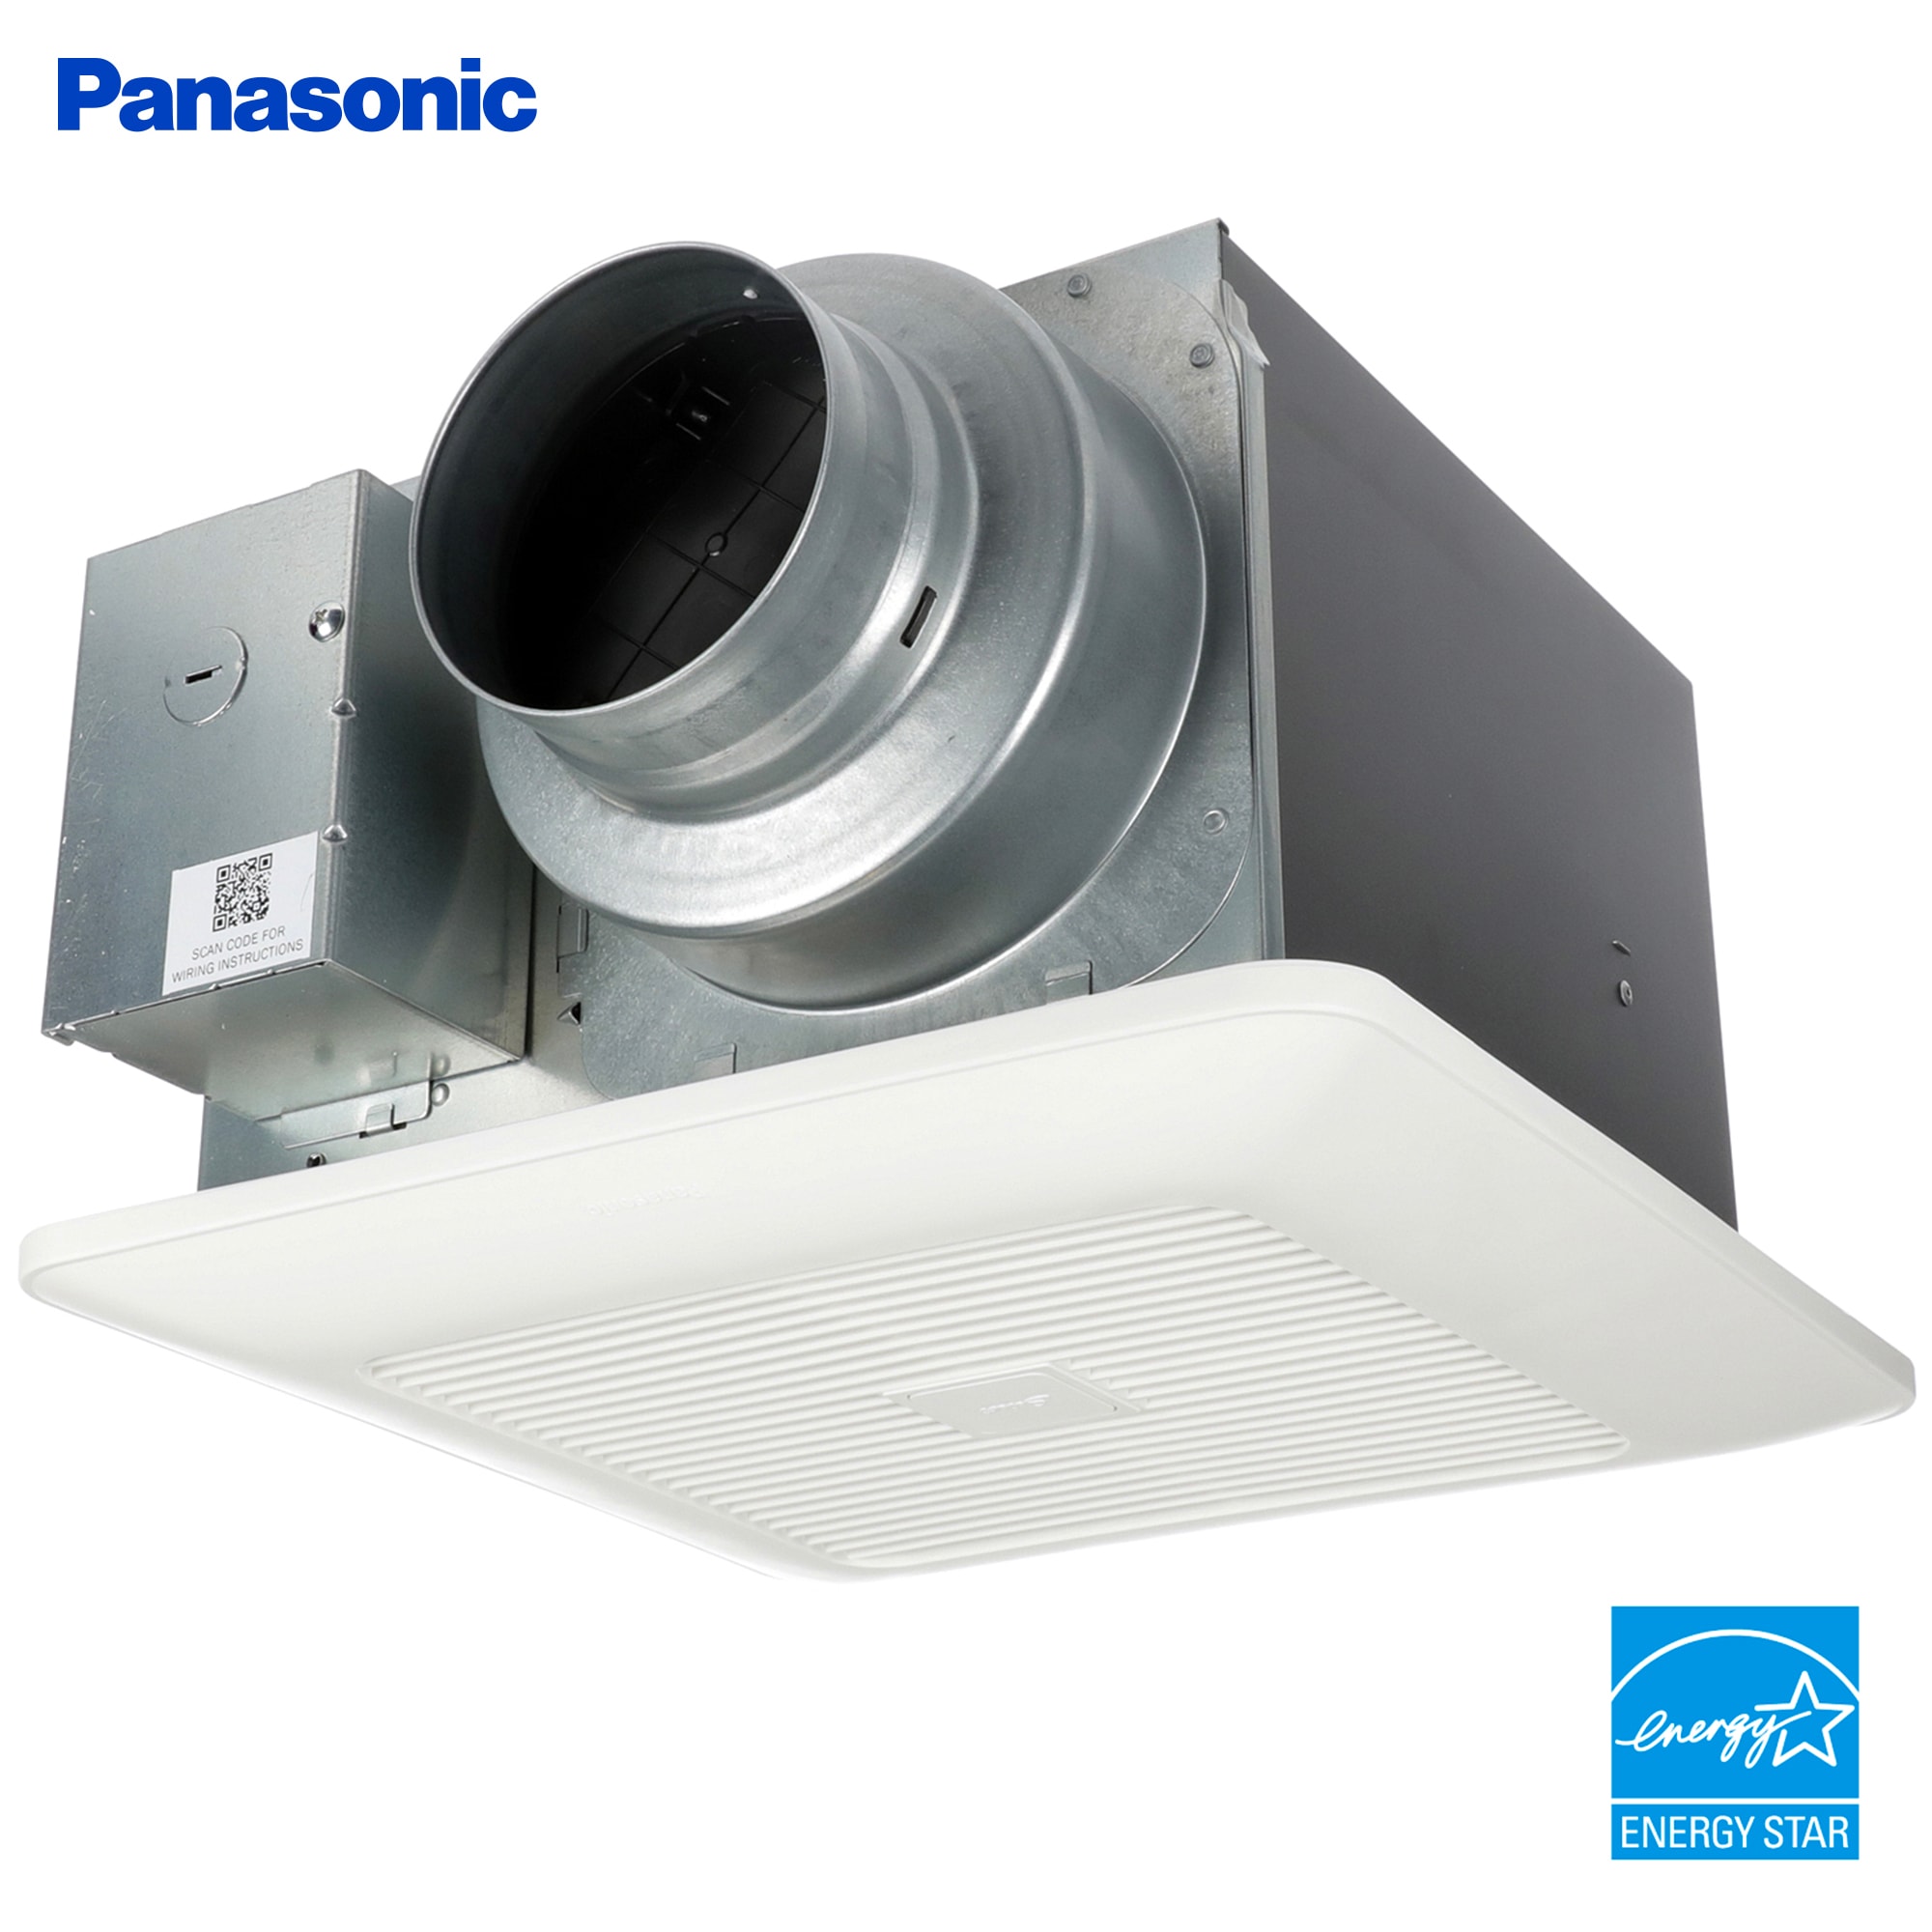 Panasonic WhisperSense 0.3-Sone 110-CFM White Bathroom Fan ENERGY 